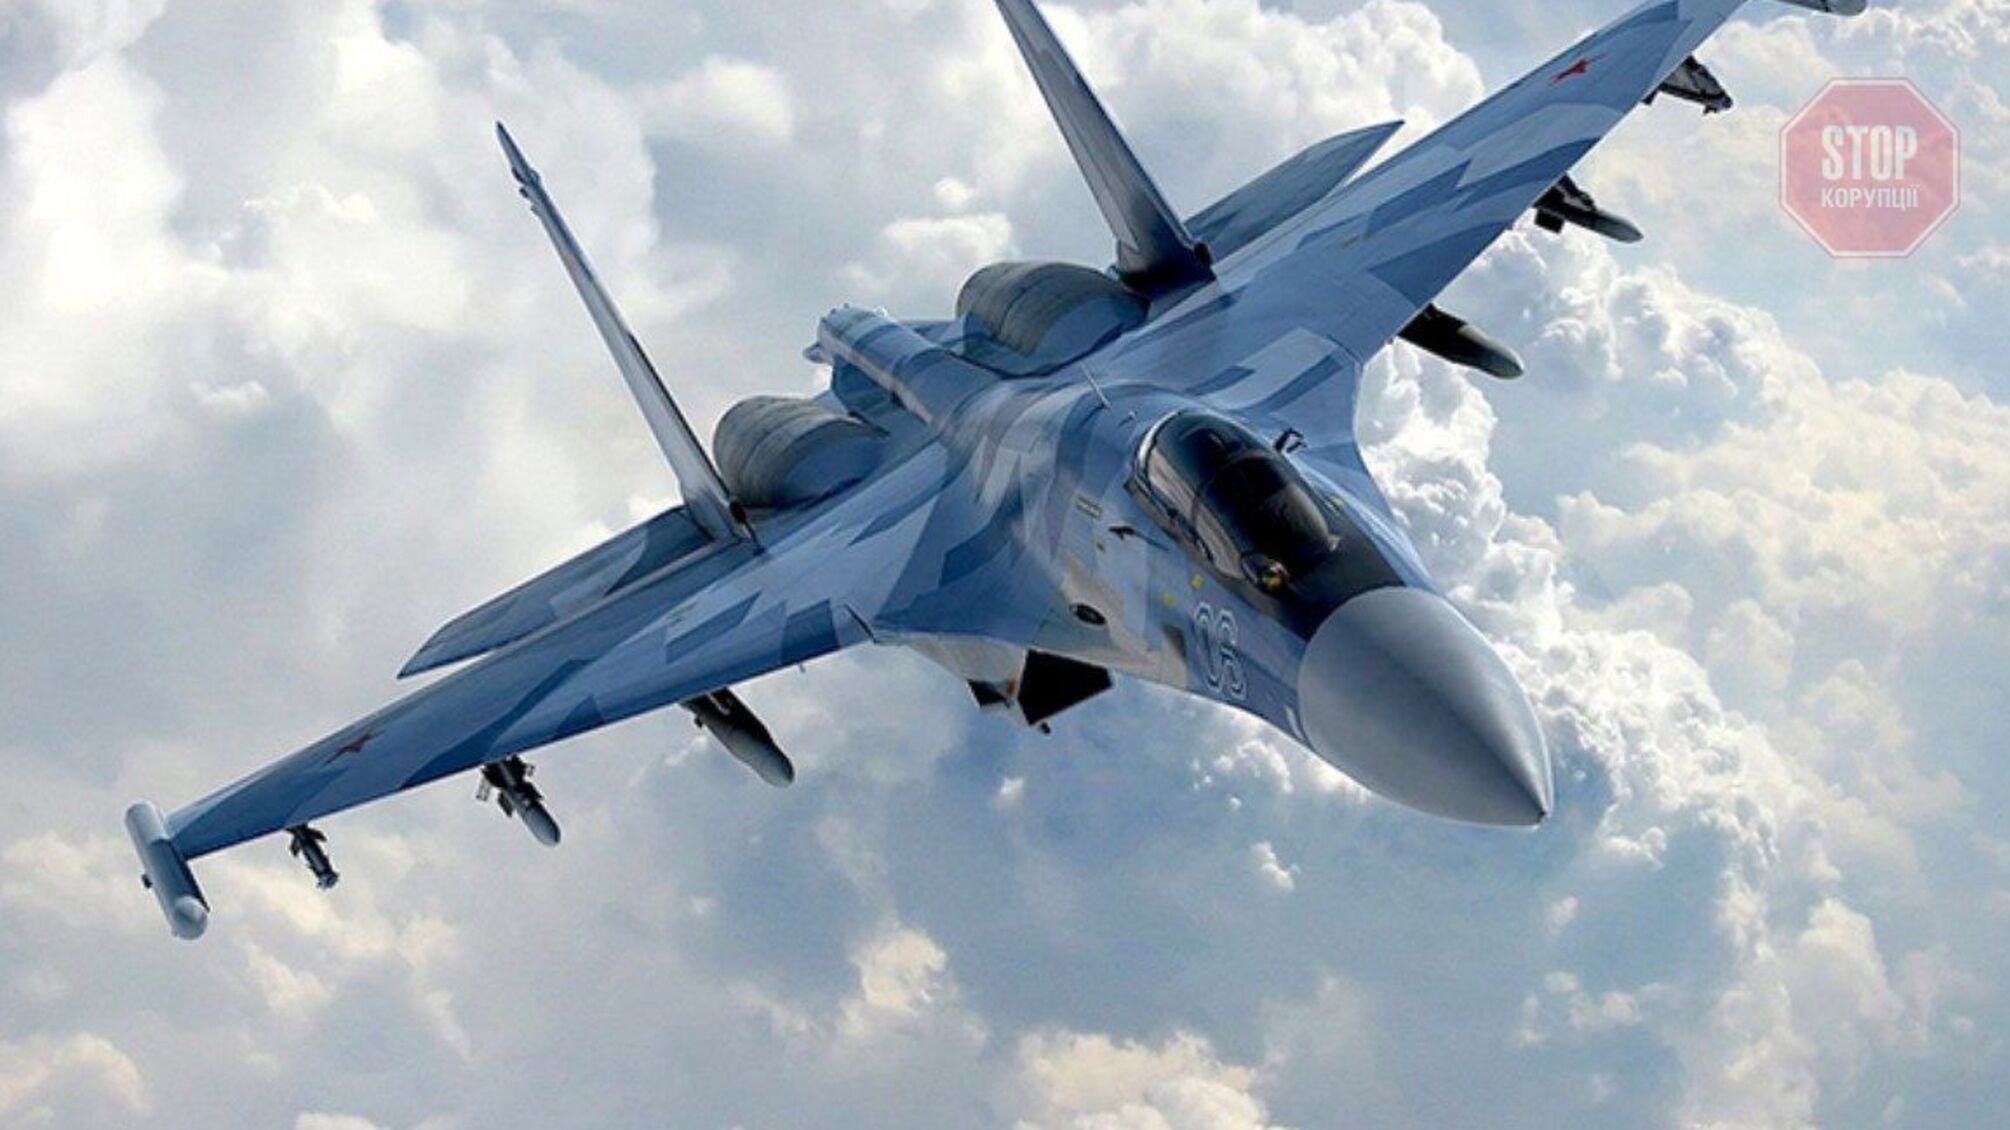 Поповнення військової авіації: Словаччина може передати Україні 11 літаків МіГ-29 вже наприкінці серпня